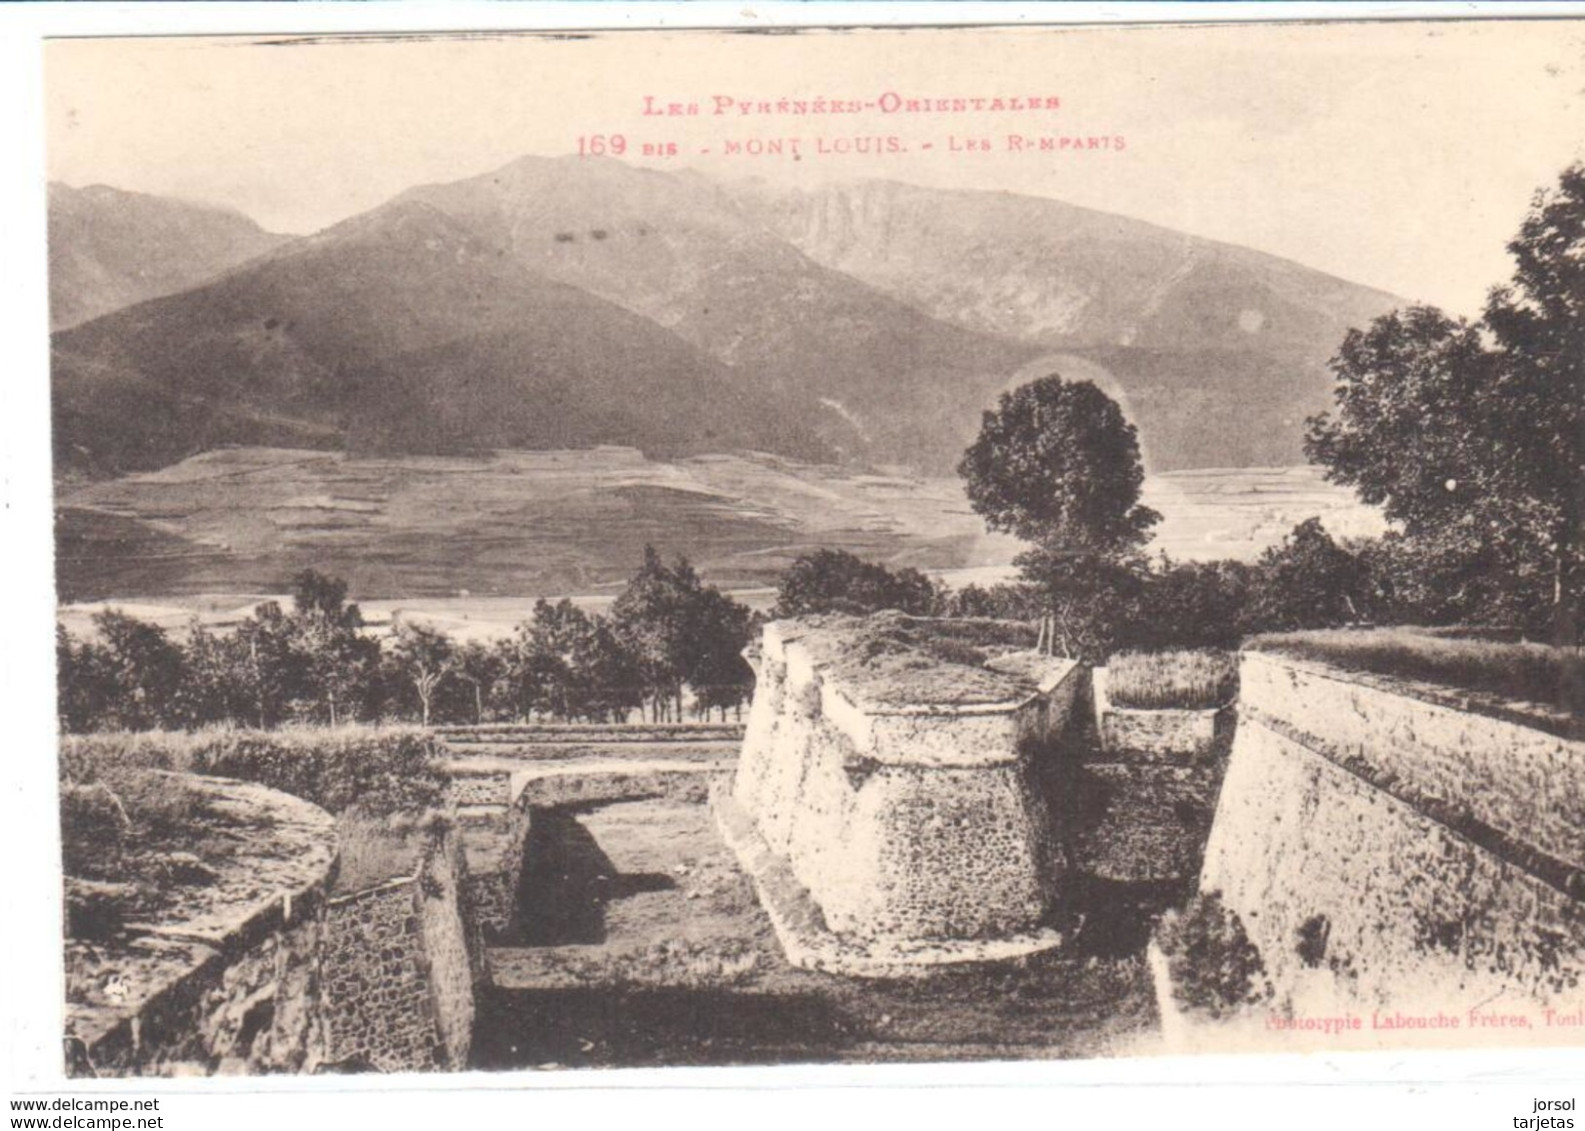 POSTALES  - MONT LOUIS (PYRÉNÉES ORIENTALES) FRANCIA  - LAS MURALLAS  ( LES REMPARTS) - Roussillon